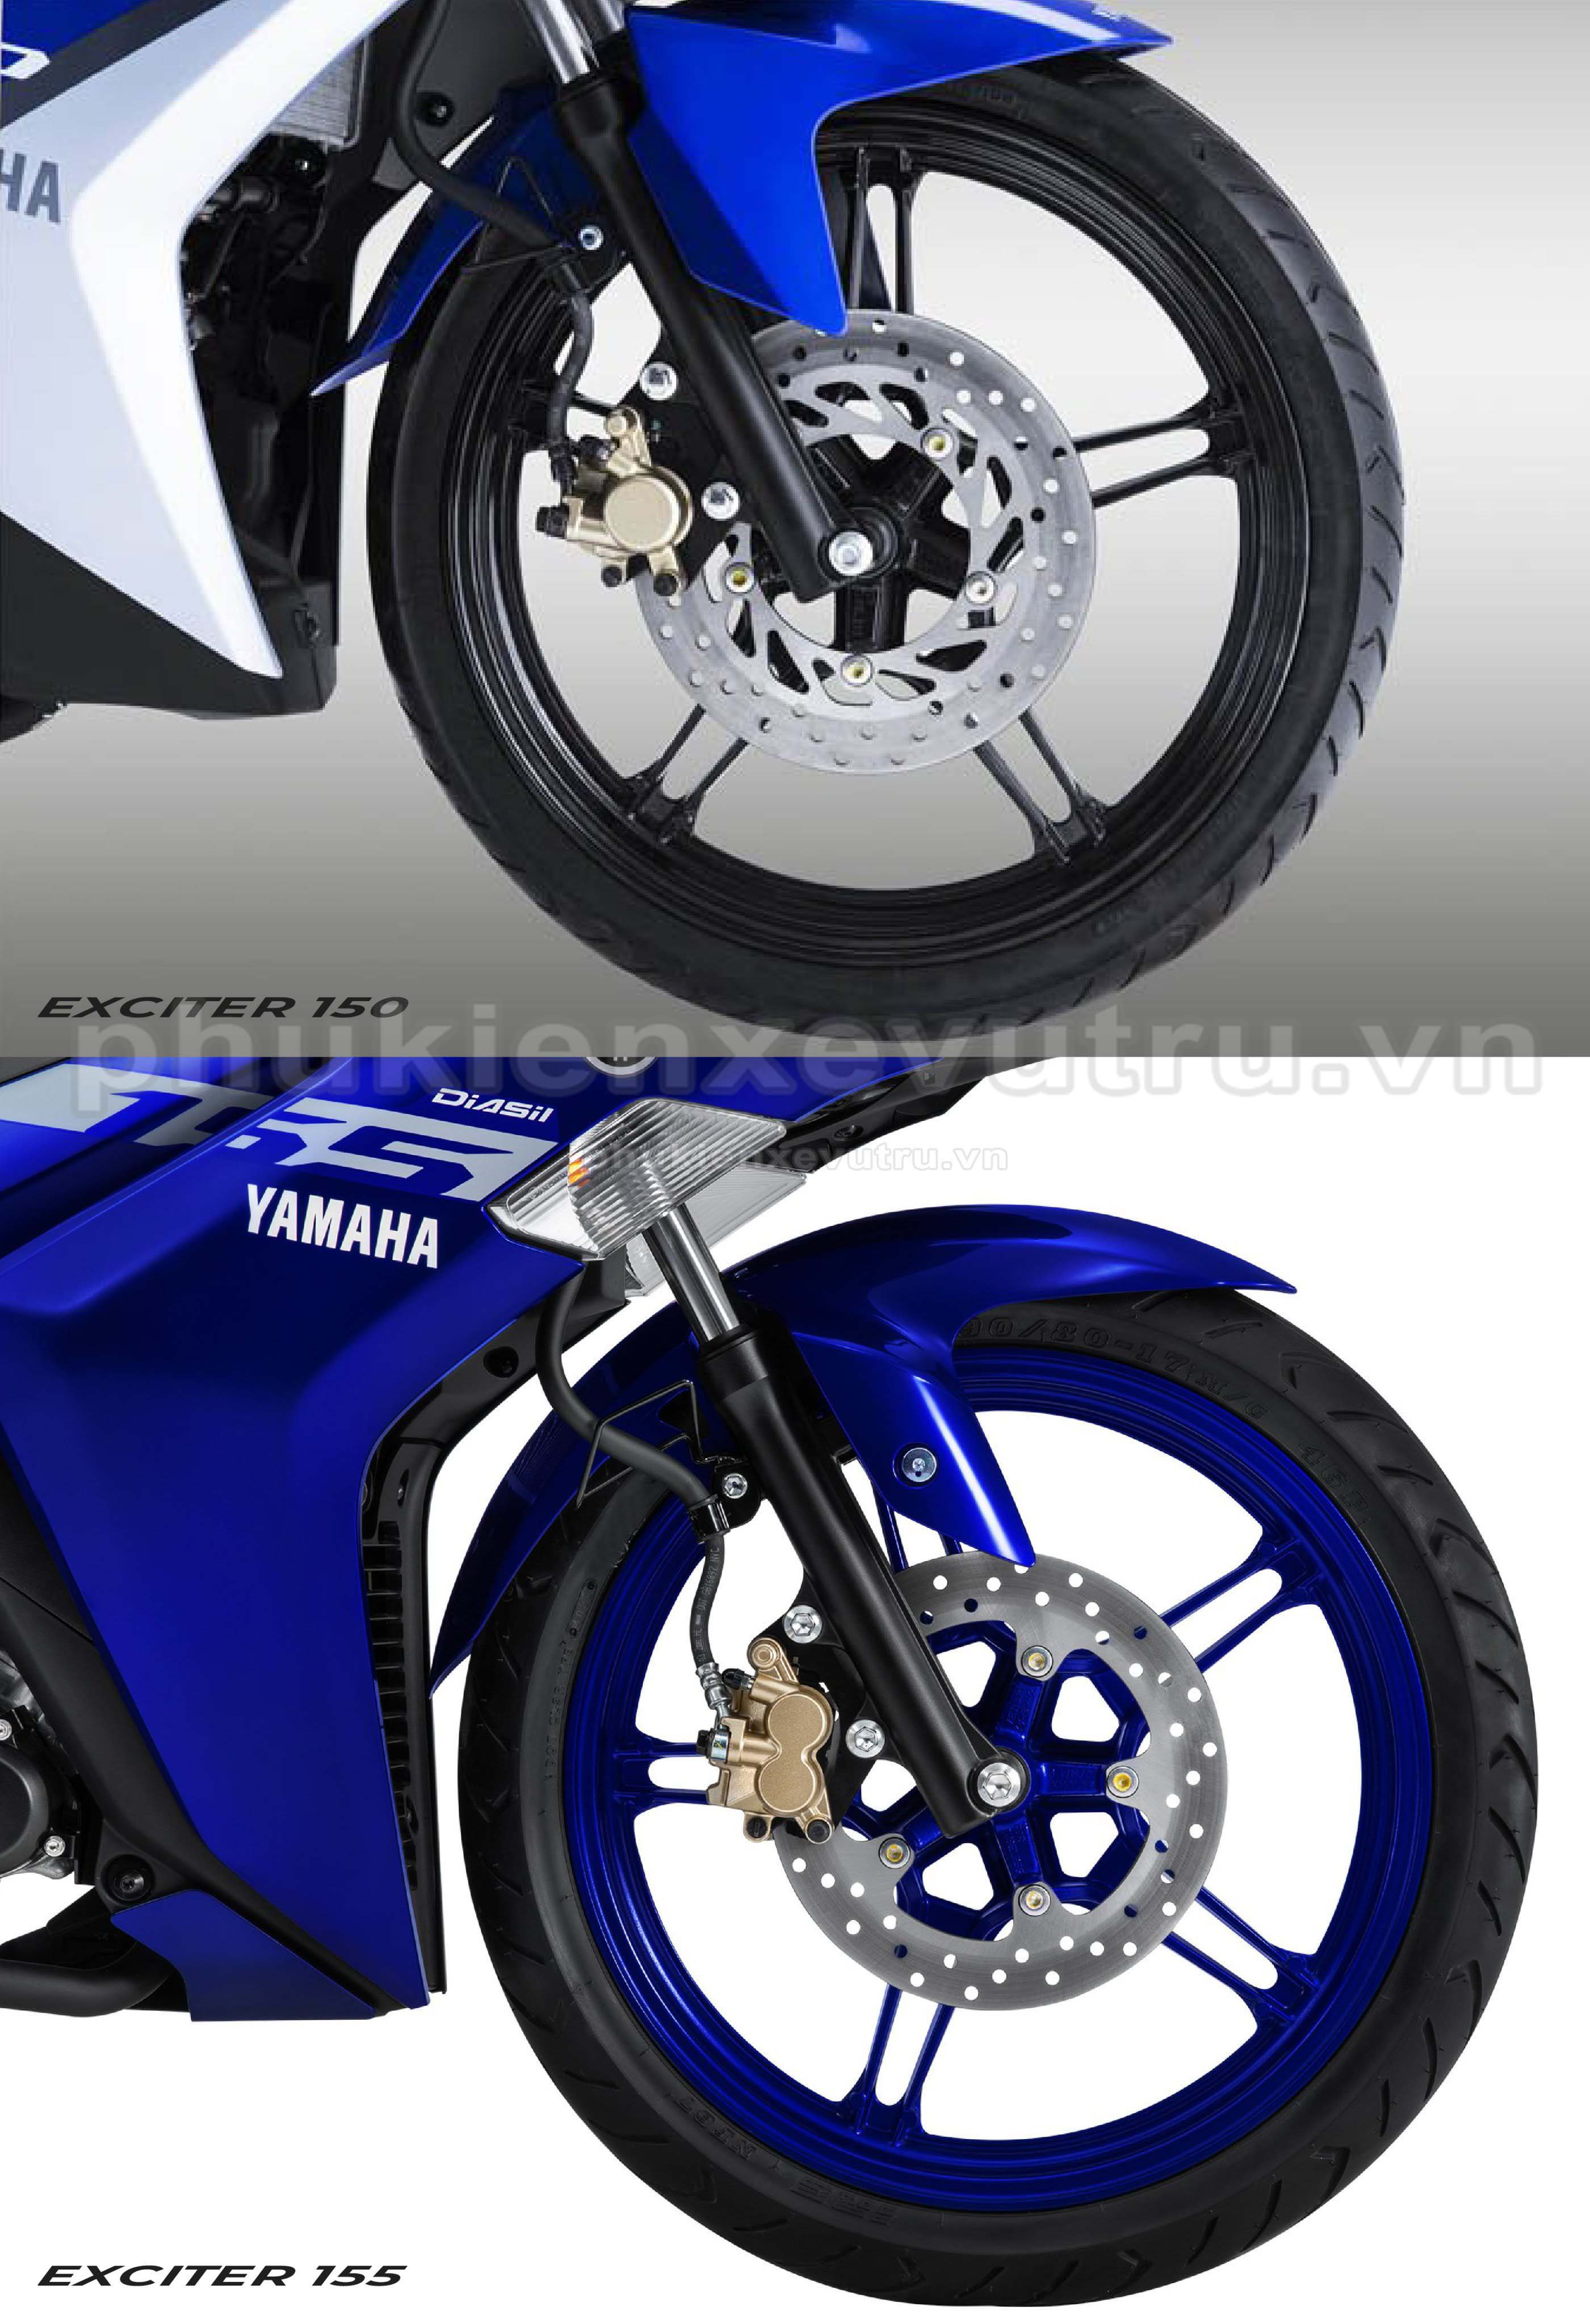 Yamaha sắp ra mắt xe mới Liệu sẽ là Exciter 155 phiên bản thay tem hoặc  có thêm phanh ABS